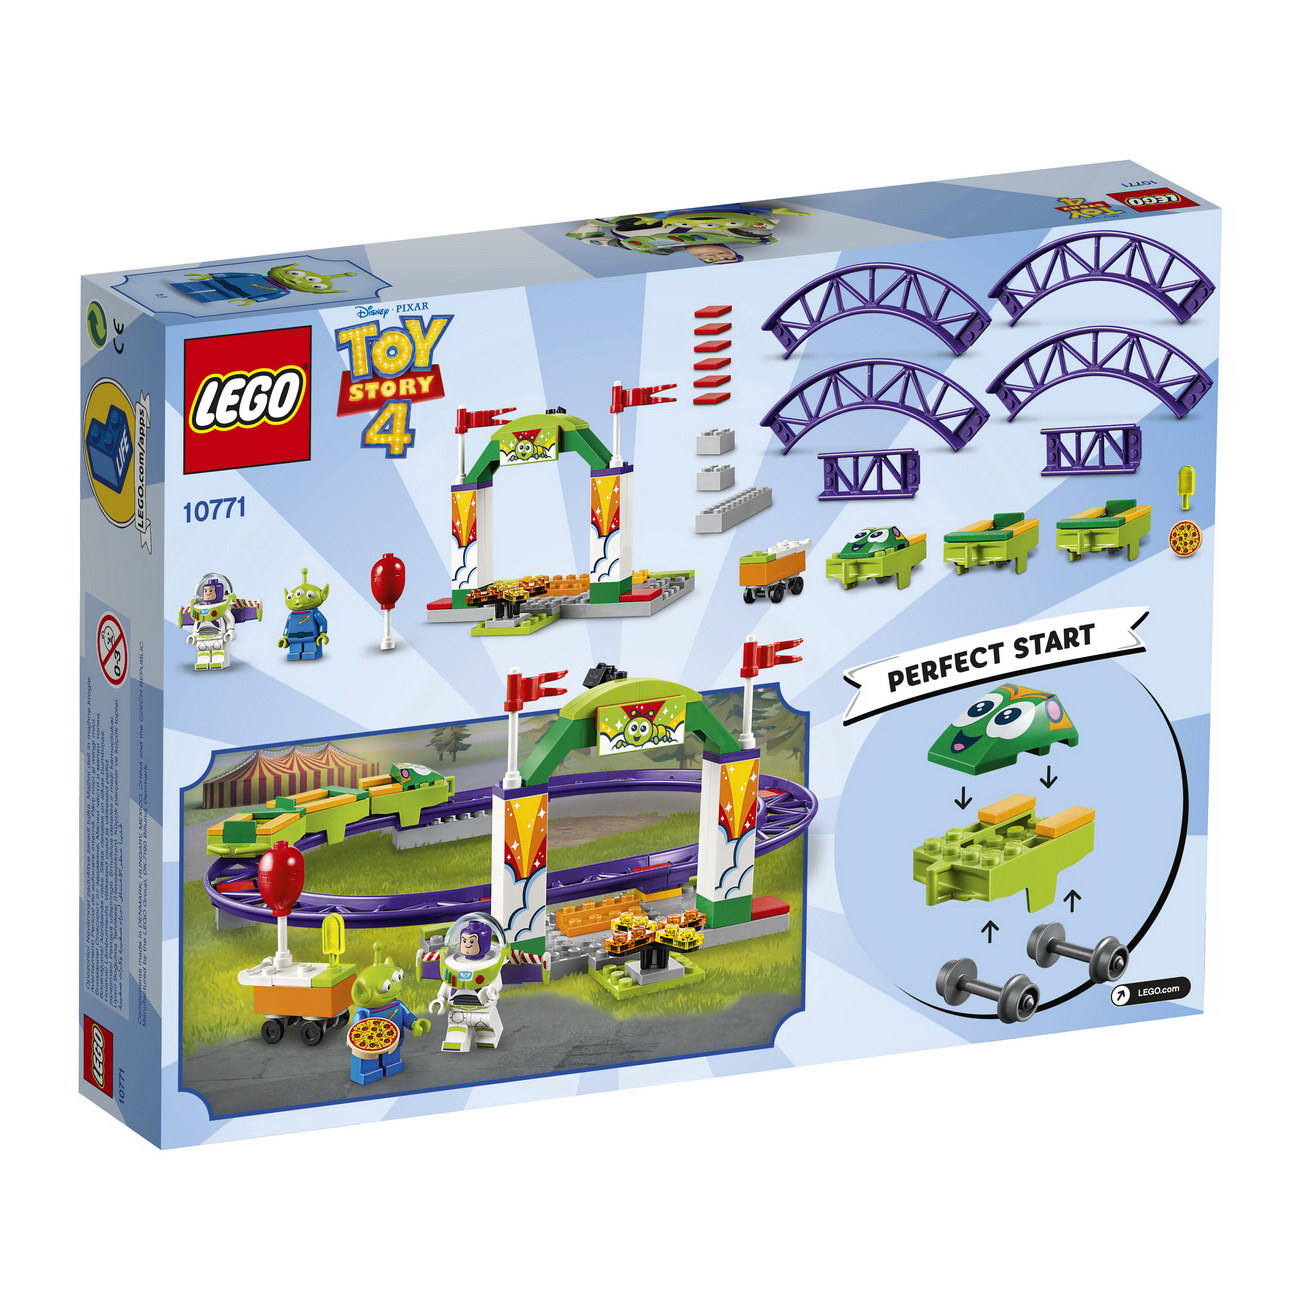 x-2019-08-LEGO 4+ (10771) Buzz wilde Achterbahnfahrt